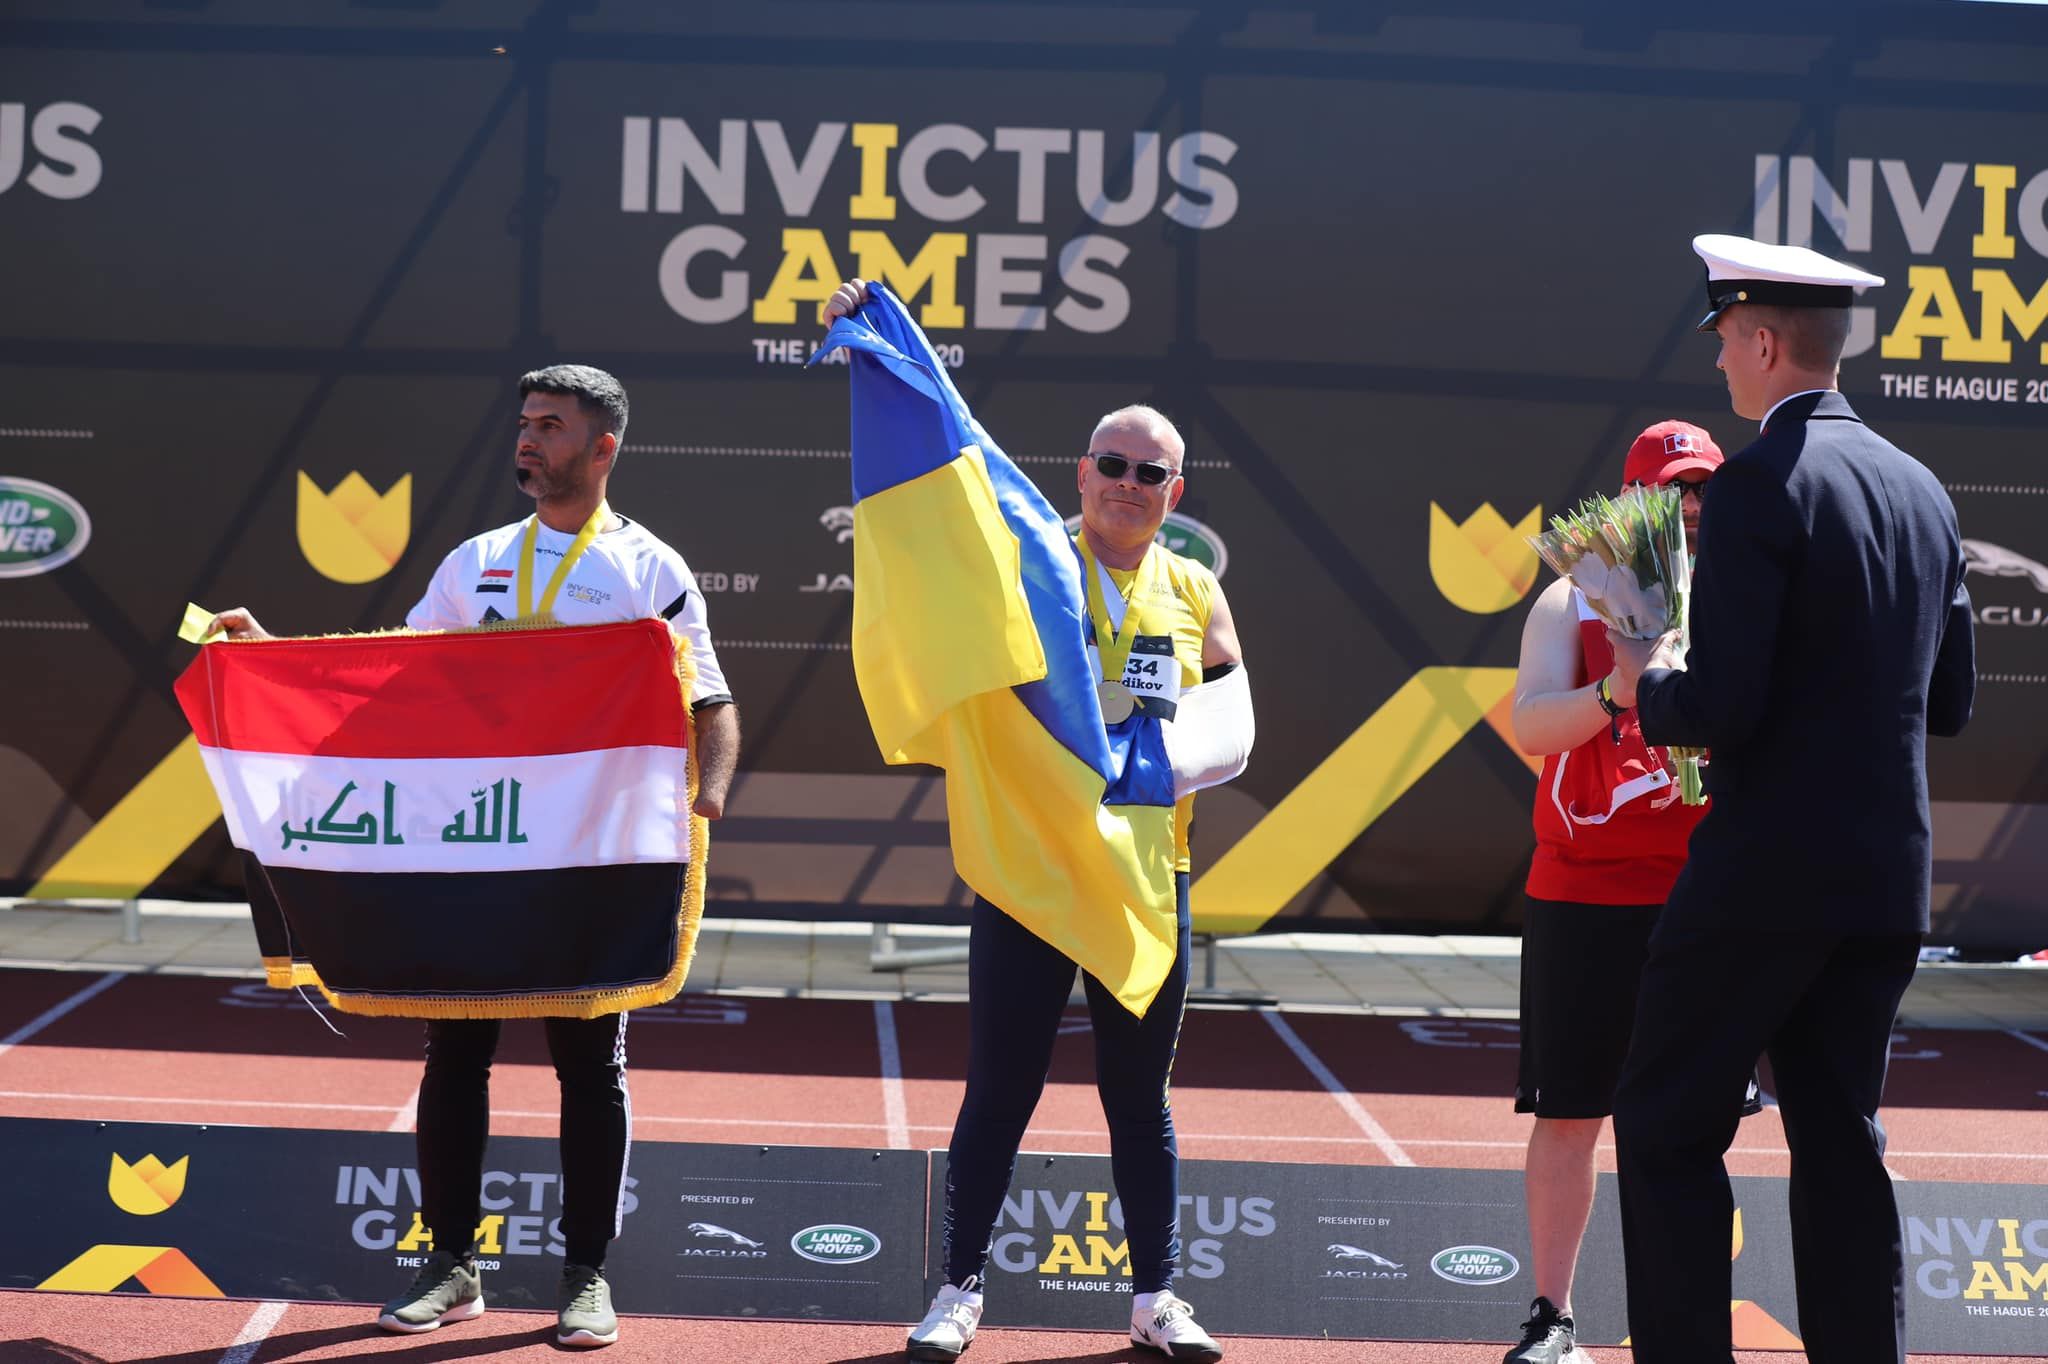 Украина получила первое золото на Invictus Games в Гааге: мощные фото